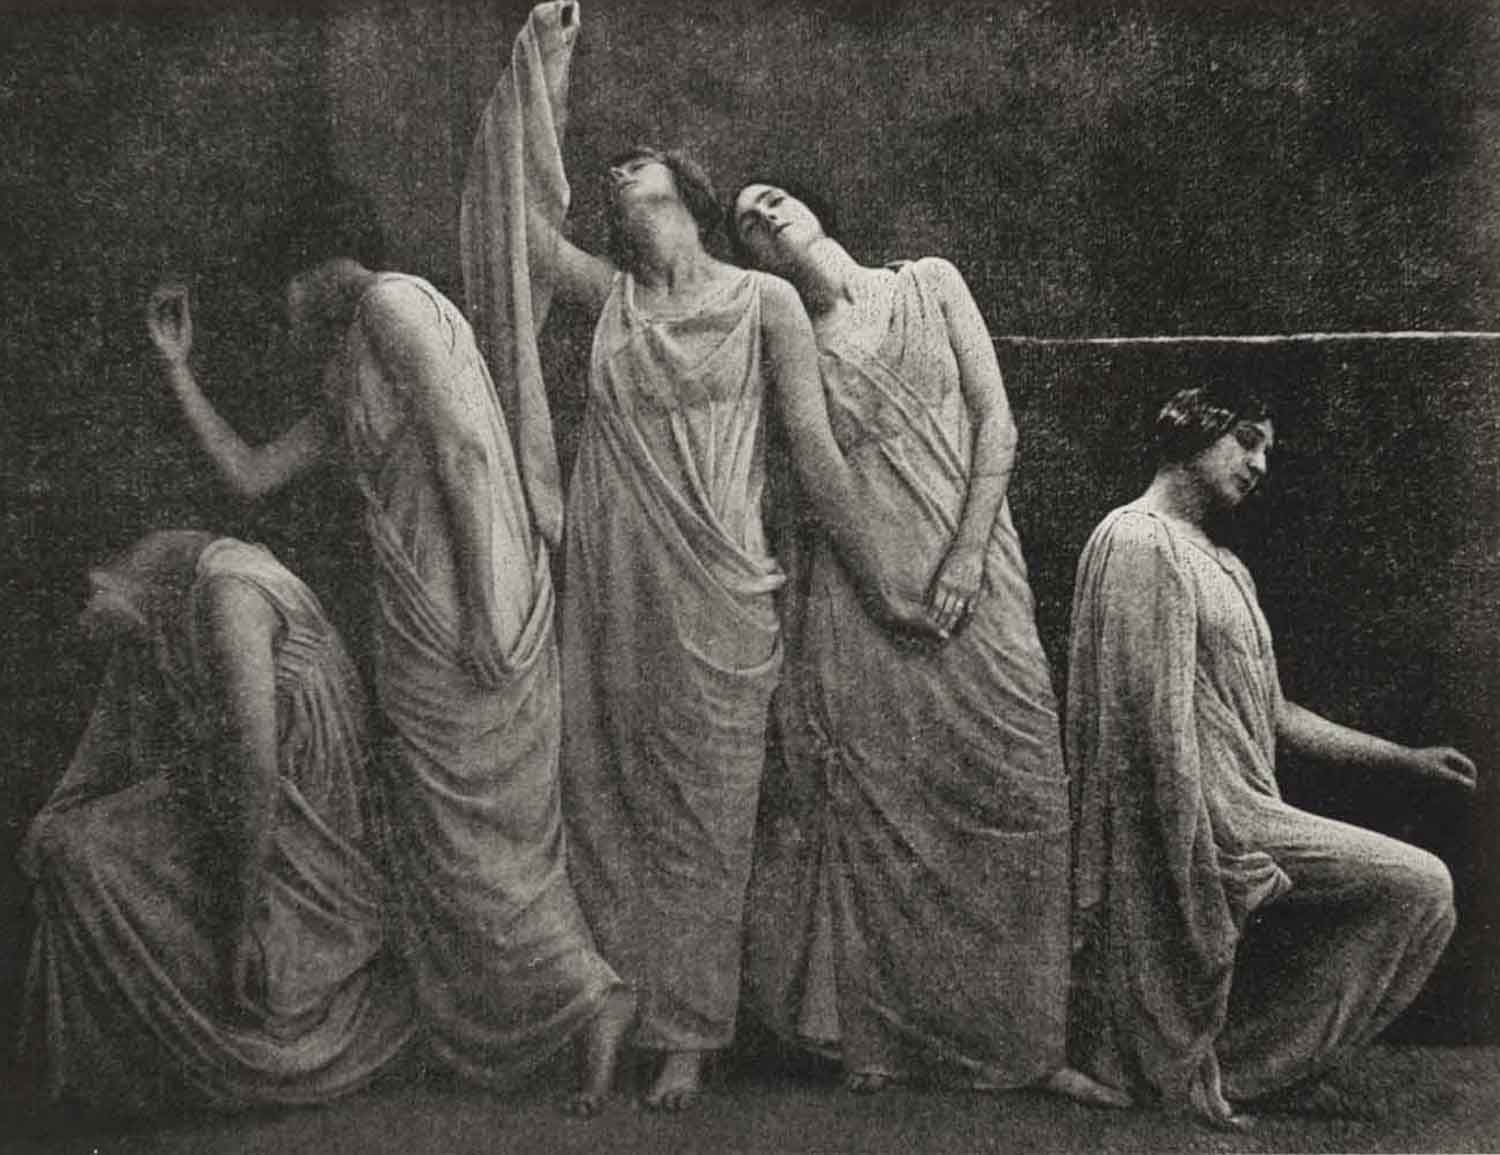 Foto, schwarz-weiß, innen: Fünf Frauen in weißen langen Kleidern hocken und stehen aneinandergelehnt in einer Reihe.